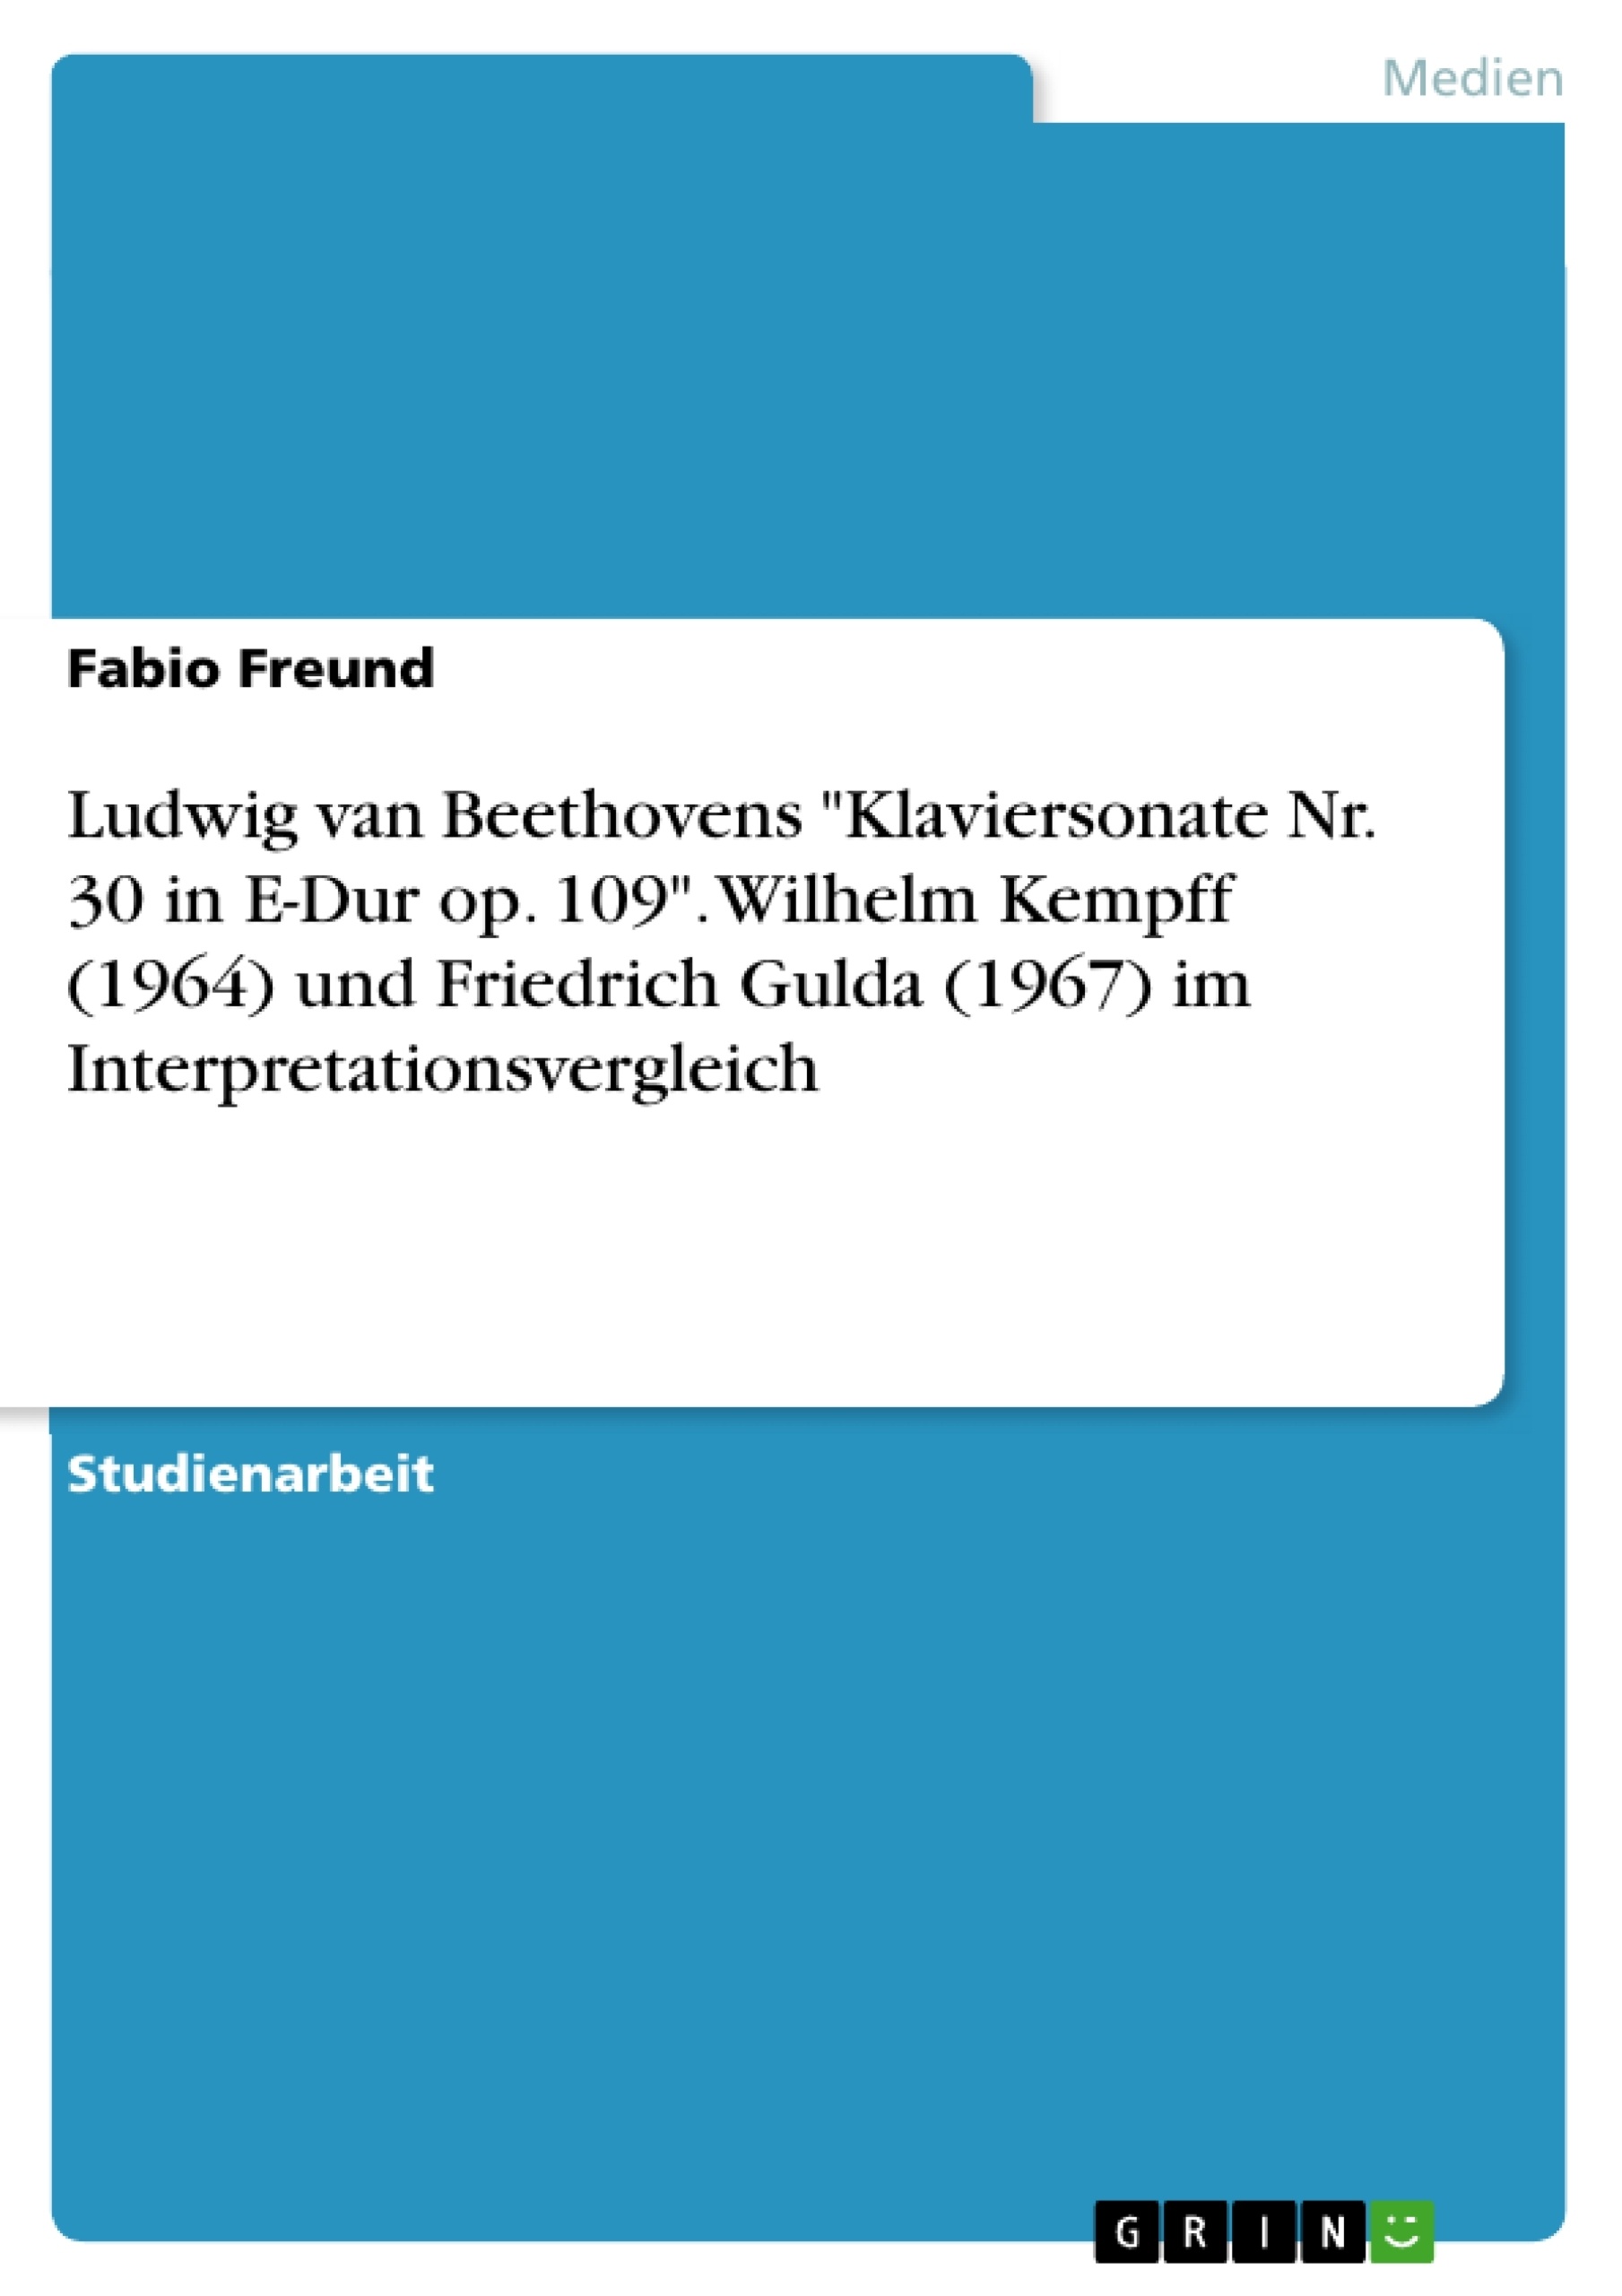 Titre: Ludwig van Beethovens "Klaviersonate Nr. 30 in E-Dur op. 109". Wilhelm Kempff (1964) und Friedrich Gulda (1967) im Interpretationsvergleich